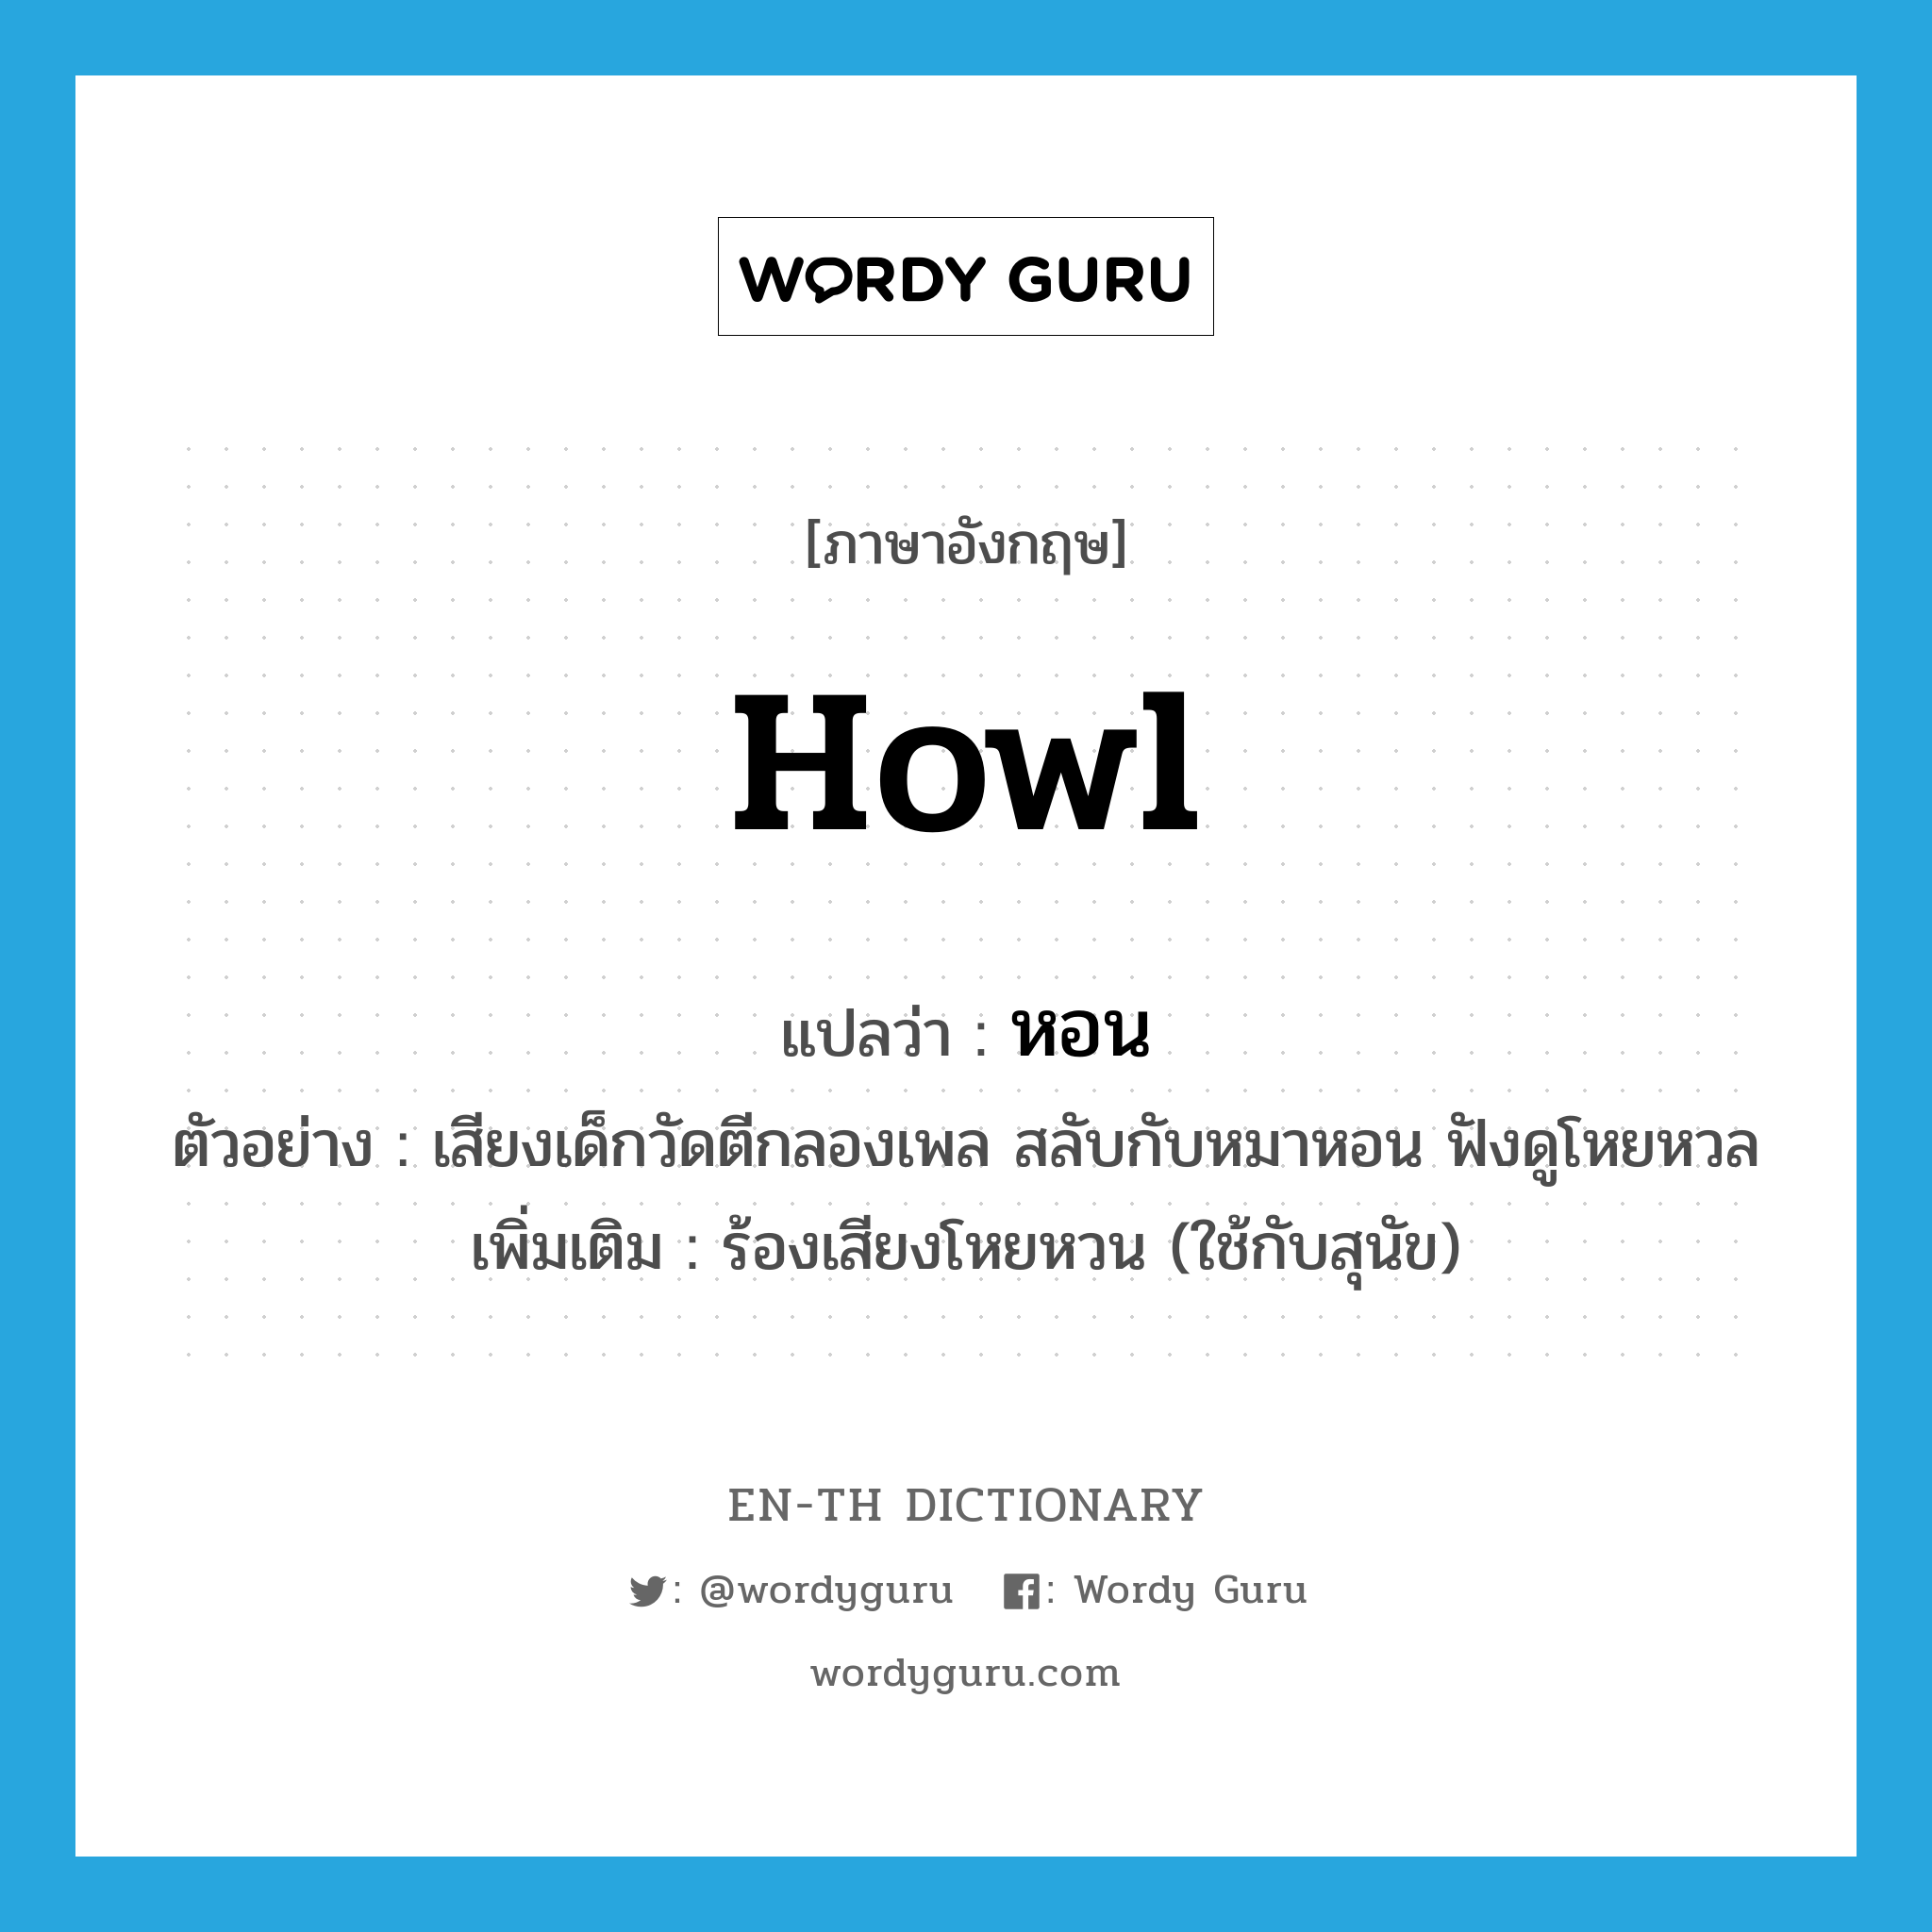 howl แปลว่า?, คำศัพท์ภาษาอังกฤษ howl แปลว่า หอน ประเภท V ตัวอย่าง เสียงเด็กวัดตีกลองเพล สลับกับหมาหอน ฟังดูโหยหวล เพิ่มเติม ร้องเสียงโหยหวน (ใช้กับสุนัข) หมวด V